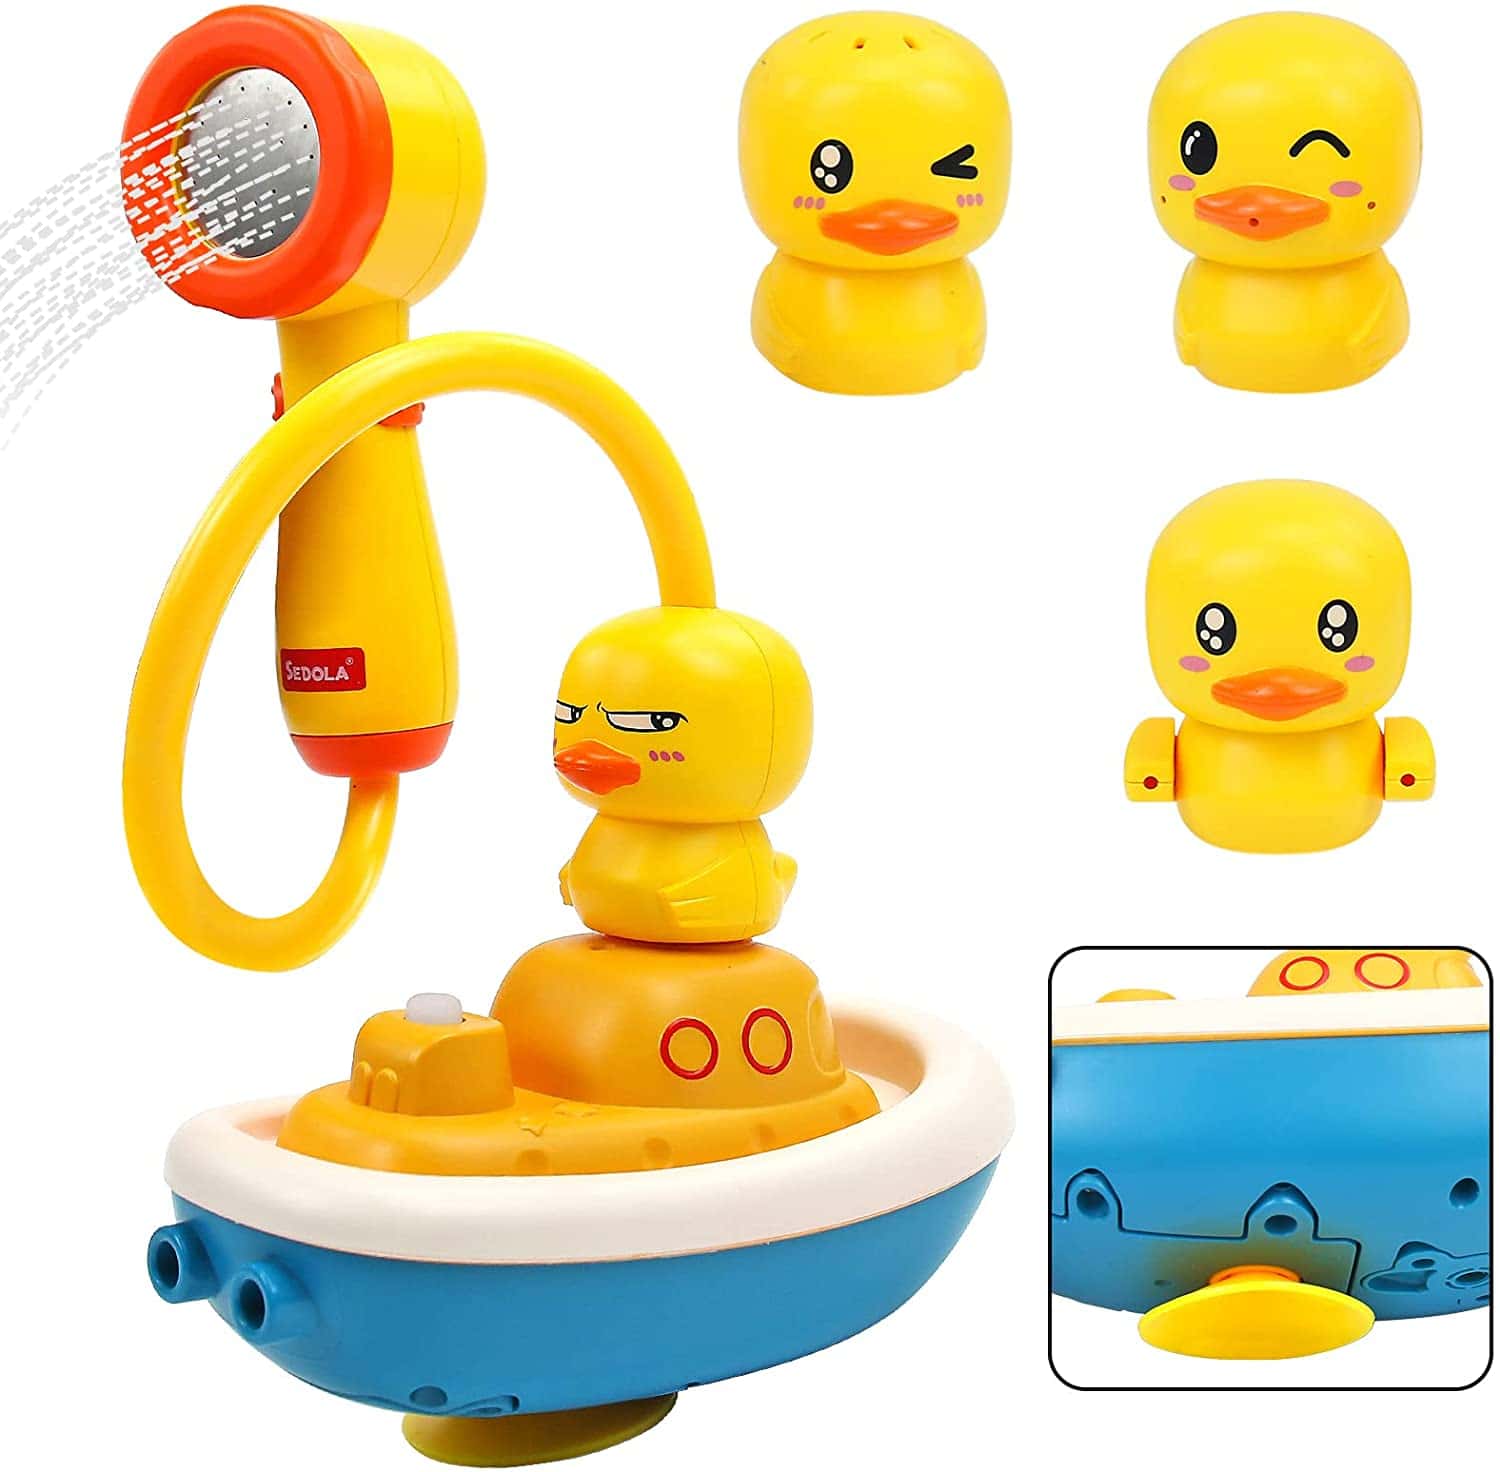 製品情報 ・【お風呂用おもちゃセット】アヒルのお風呂用おもちゃ4点セットです。かわいらしい表情のアヒルが4種類いて、アヒルごとに噴水の形が異なります。複数の遊び方を組み合わせてさまざまな水遊びを楽しみ、子供の手と目の協調と想像力を高めます。 ・【かわいいおもちゃ】おもちゃには噴水の水の流れを制御するスイッチが付いています。王冠、手、または頬に噴水のあるアヒルを使用している場合は、スイッチを押して最初のギアを設定すれば大丈夫です。また、ボートの底にはプロペラが装備されており、水の流れと流速を??制御しながら物理の作用で船体を水中に浮かせることができます。吸盤はボートの底に付いているので、浴槽の壁に貼り付けてシャワーとして使用できます。 ・【人気のプレゼント】お風呂のおもちゃでお子様のバスタイムが楽しくなります。かわいいデザインのおもちゃは、男の子も女の子も興味をそそられます。完璧な誕生日プレゼントのアイデア!クリスマスやお正月、入学祝いなどの特別な日にもおすすめです。 ・【安心・安全へのこだわり】おもちゃは防水設計を採用しているので、安心して遊べます。さらに、角はすべて丸みを帯びており、鋭い凹凸やバリがないので、踏んでぶつけてもお子様の肌を守ります。 ・【ご注意】 この商品は単4電池が必要です（付けていません）、また、電池はカーボンバッテリーの使用をお勧めします。ハイパワーバッテリーは使用不能です。 この商品は説明書が日本語ではありません、ご注意してください。